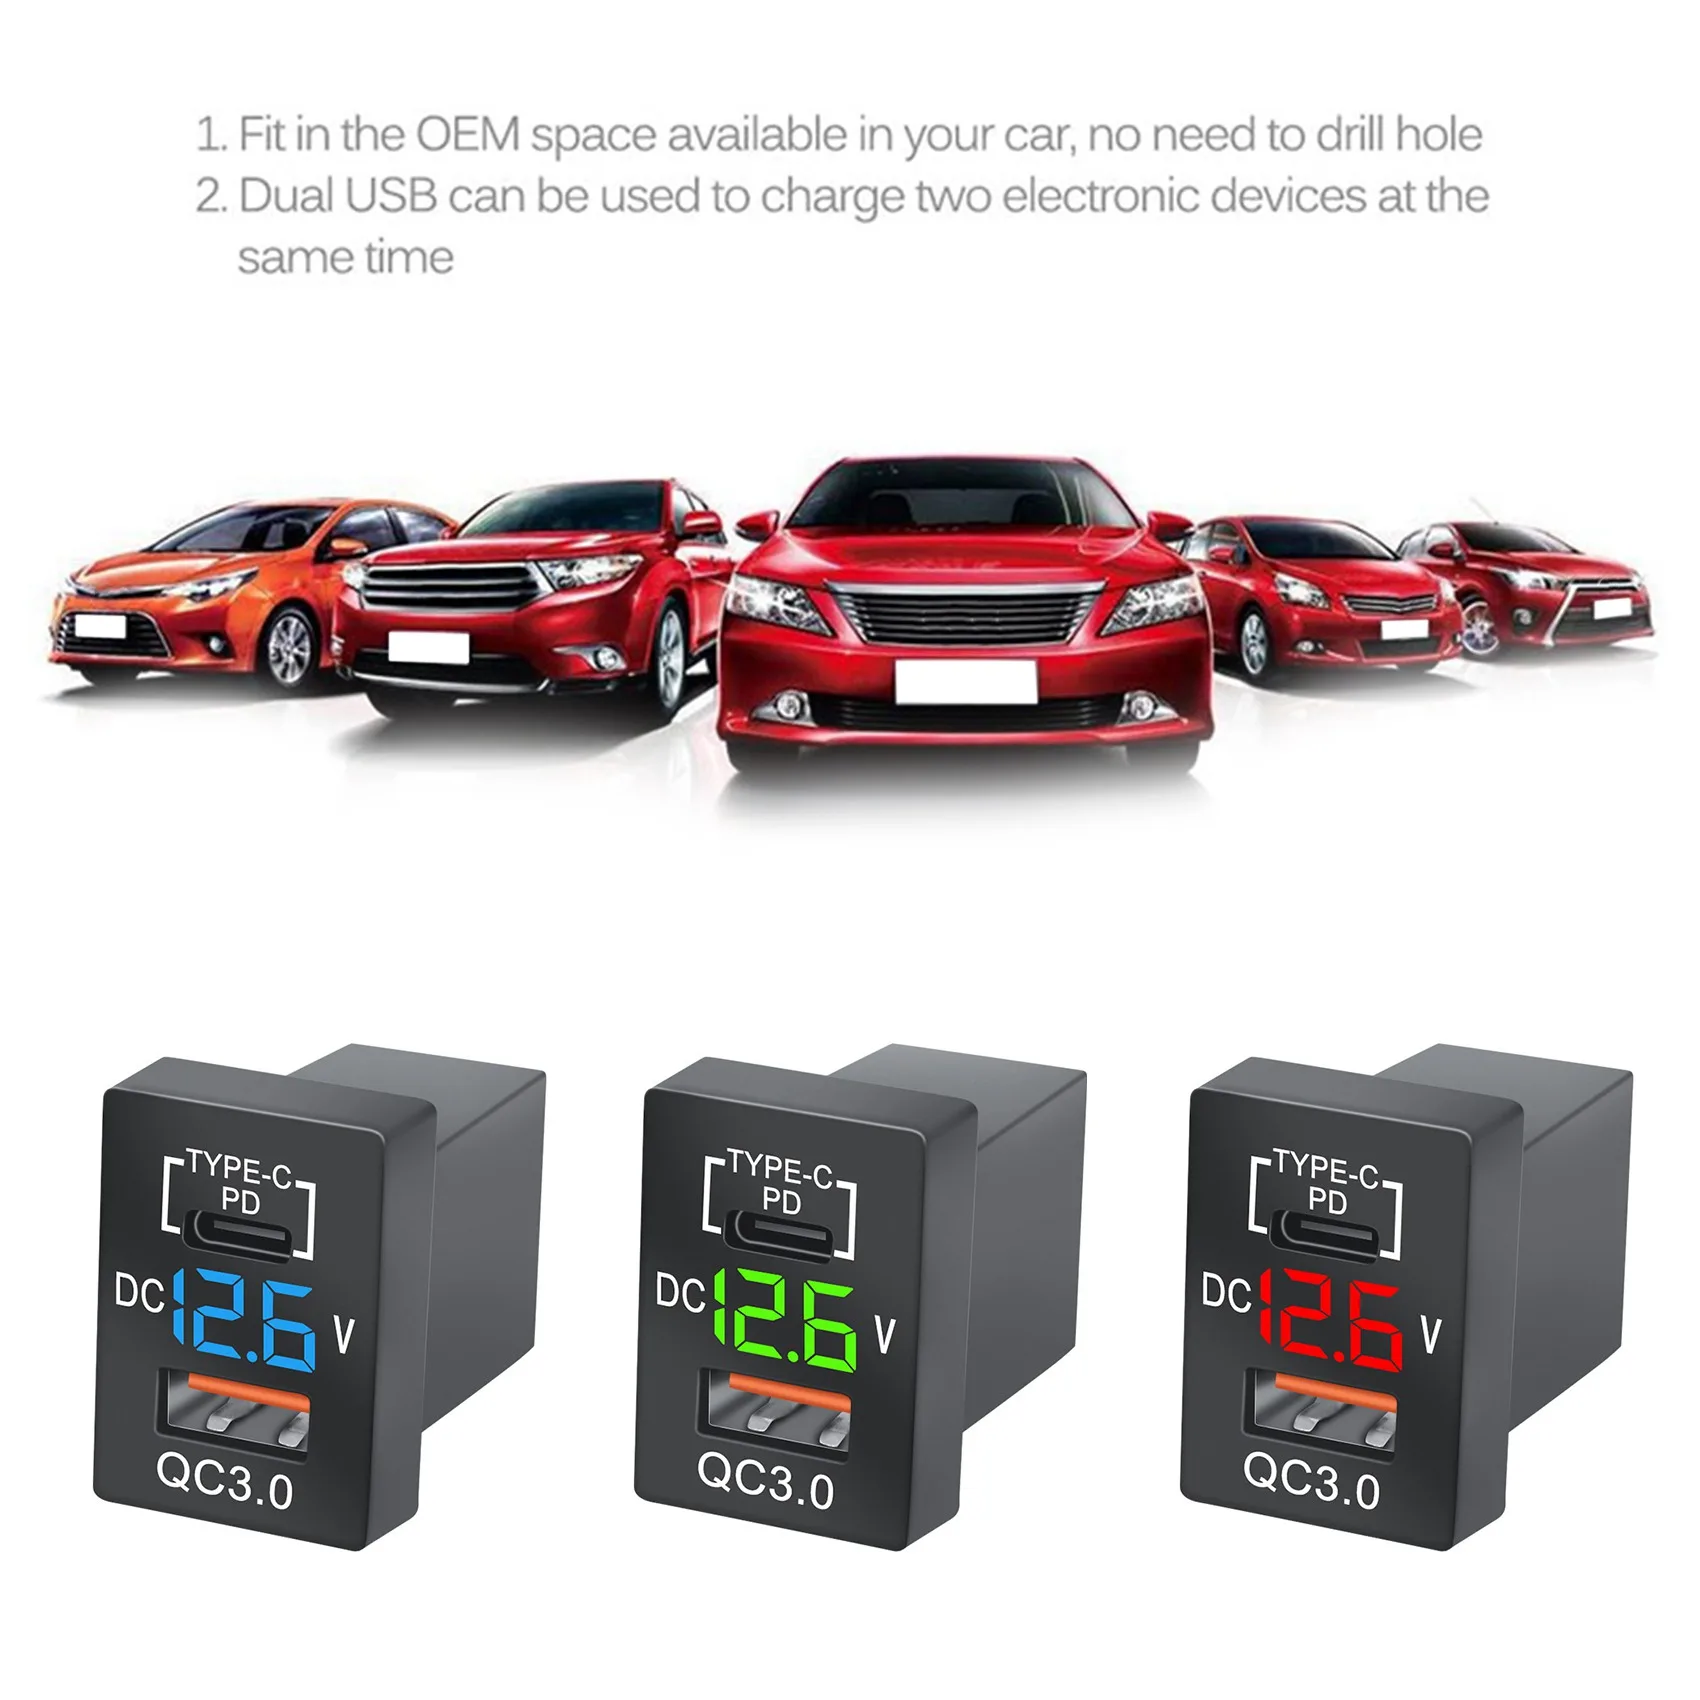 Noul Incarcator QC3.0 USB Masina Încărcător Priză PD-C Tip Încărcător cu LED Verde Voltmetru Digital pentru Noua Toyota Încărcare Rapidă - 0